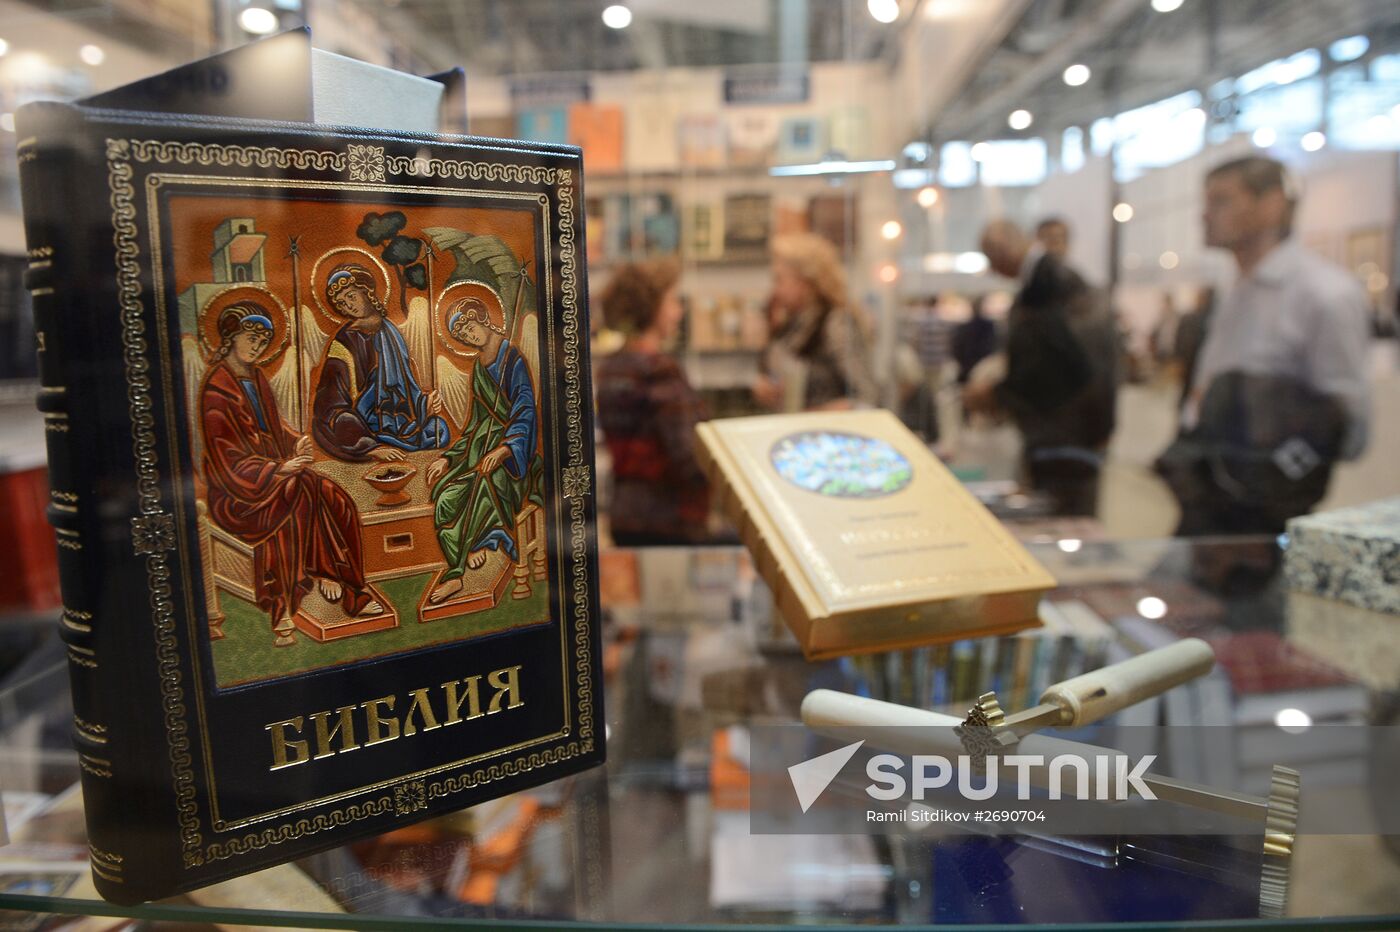 28th Moscow International Book Fair